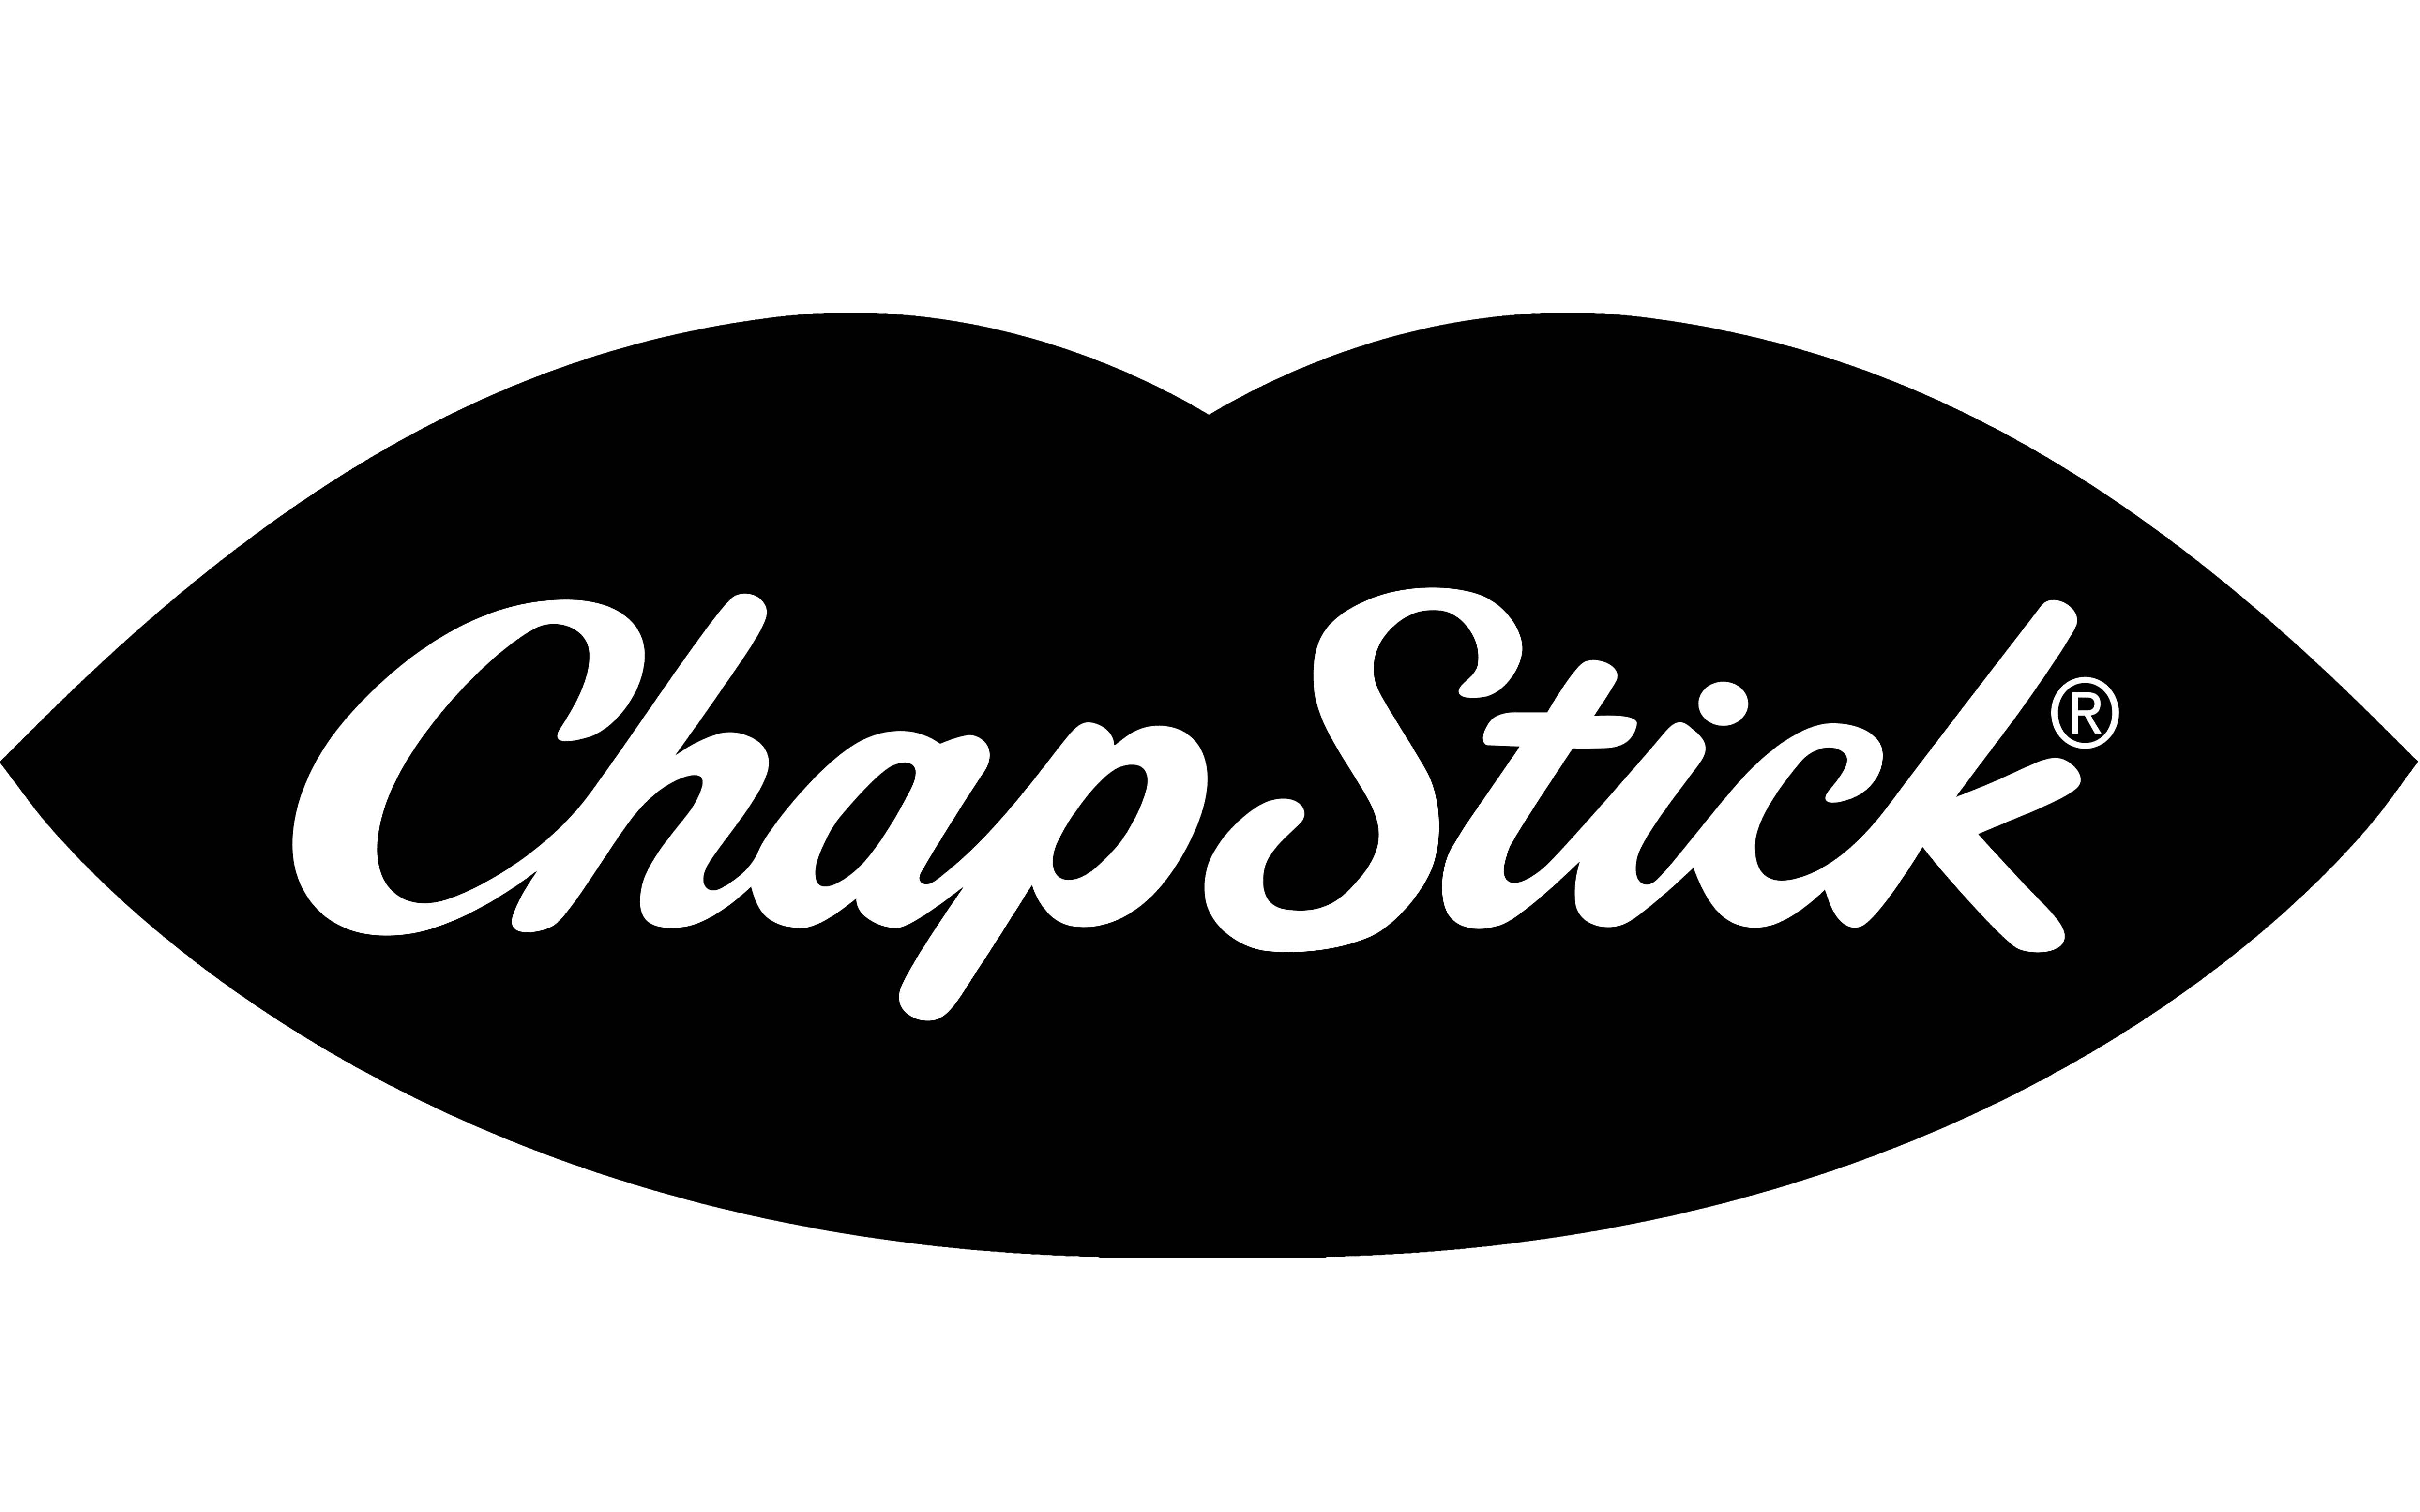 Mẫu thiết kế logo thương hiệu công ty CHAPSTICK